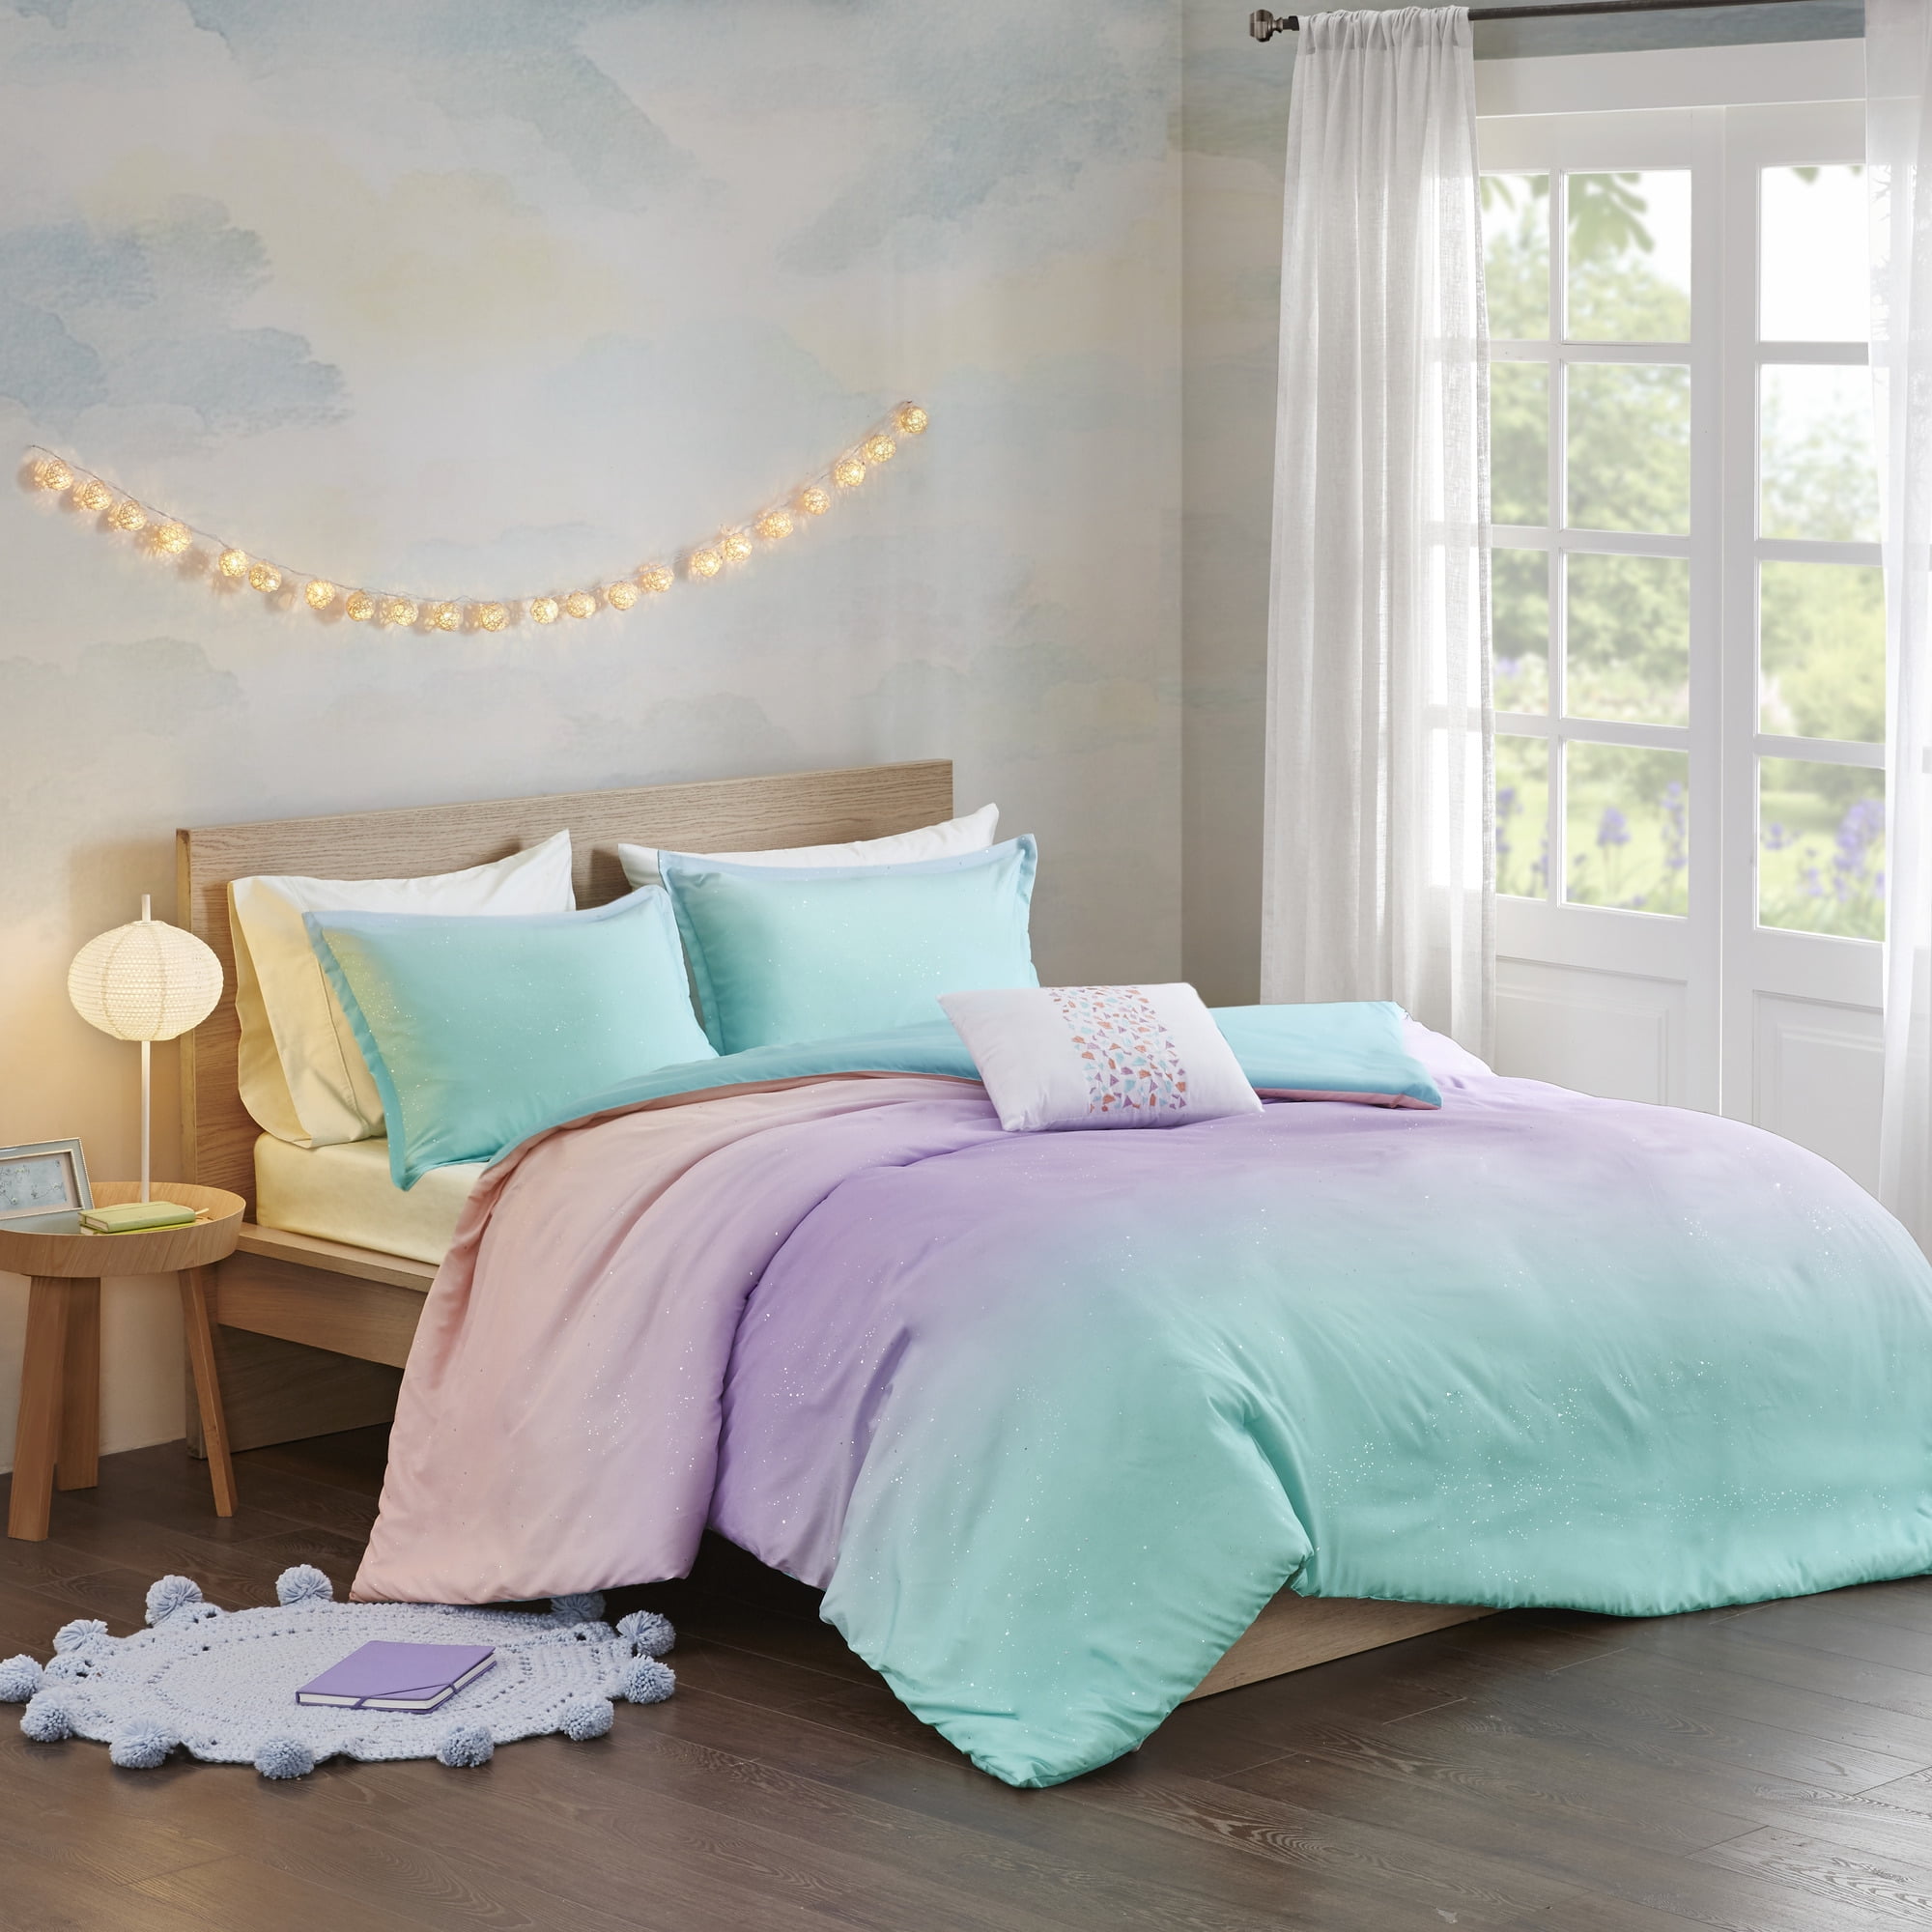 Queen Bed Sheet Set For Sweet Jojo Turquoise Pink Polka Dot Skylar Girl Bedding 